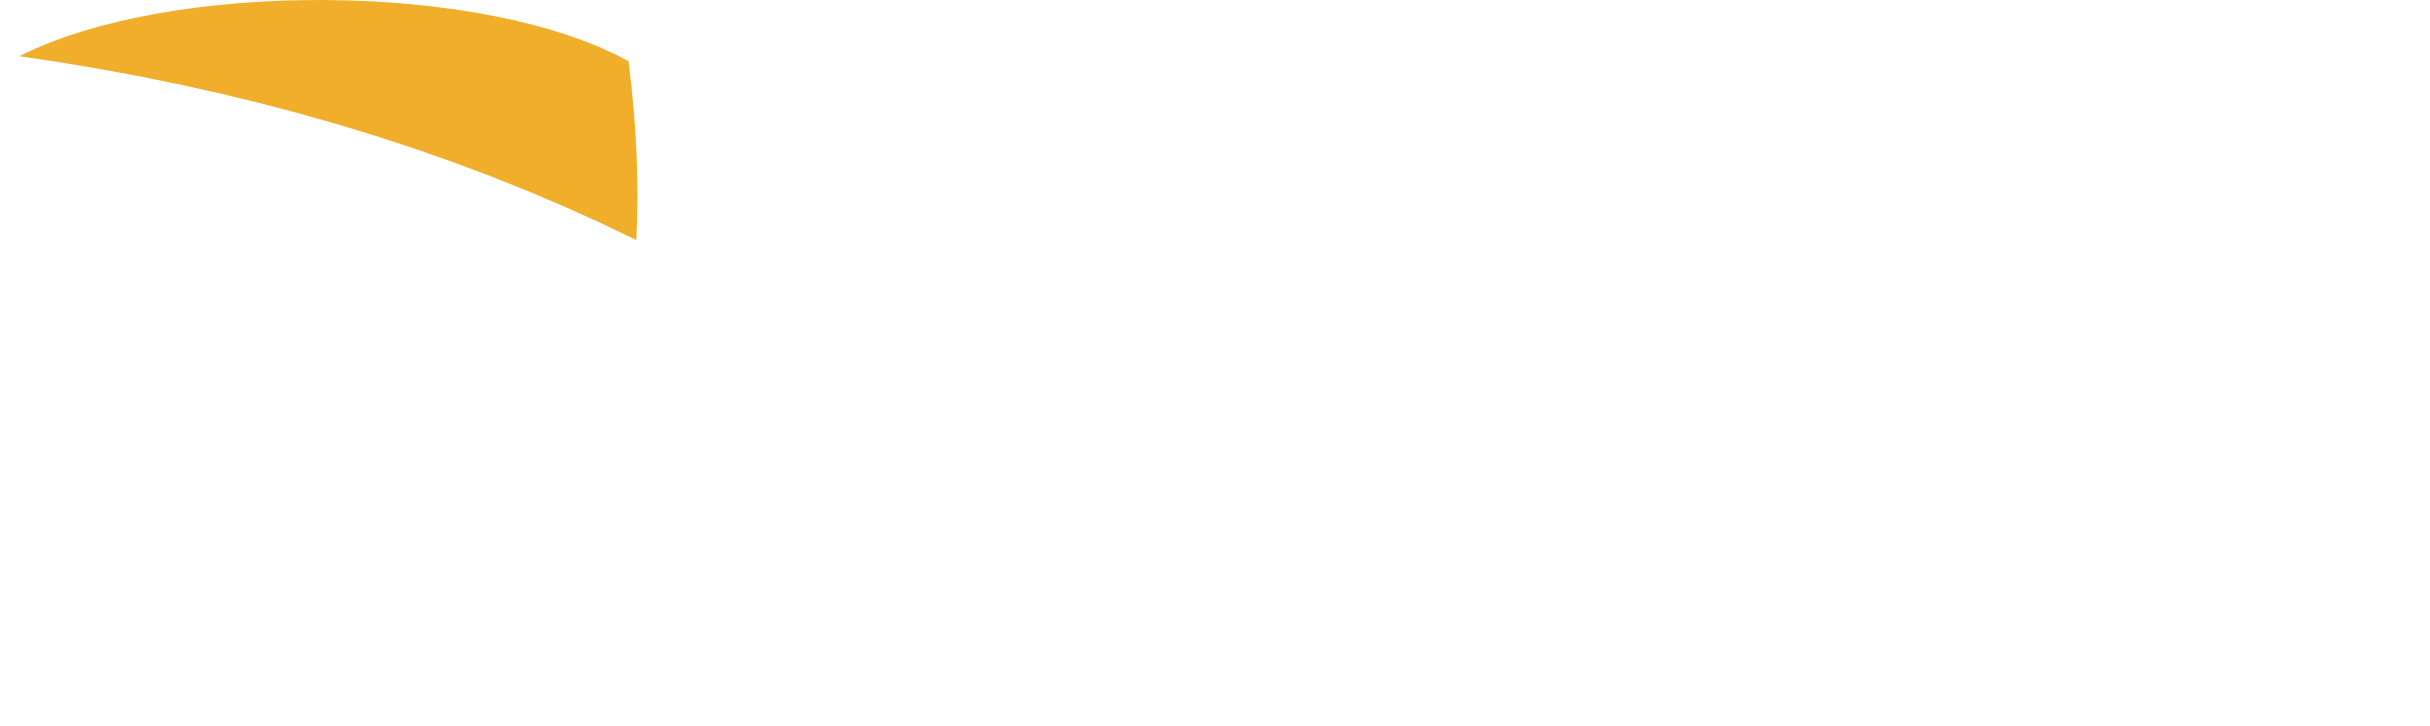 Safecorp - Bezpečnosť na prvom mieste